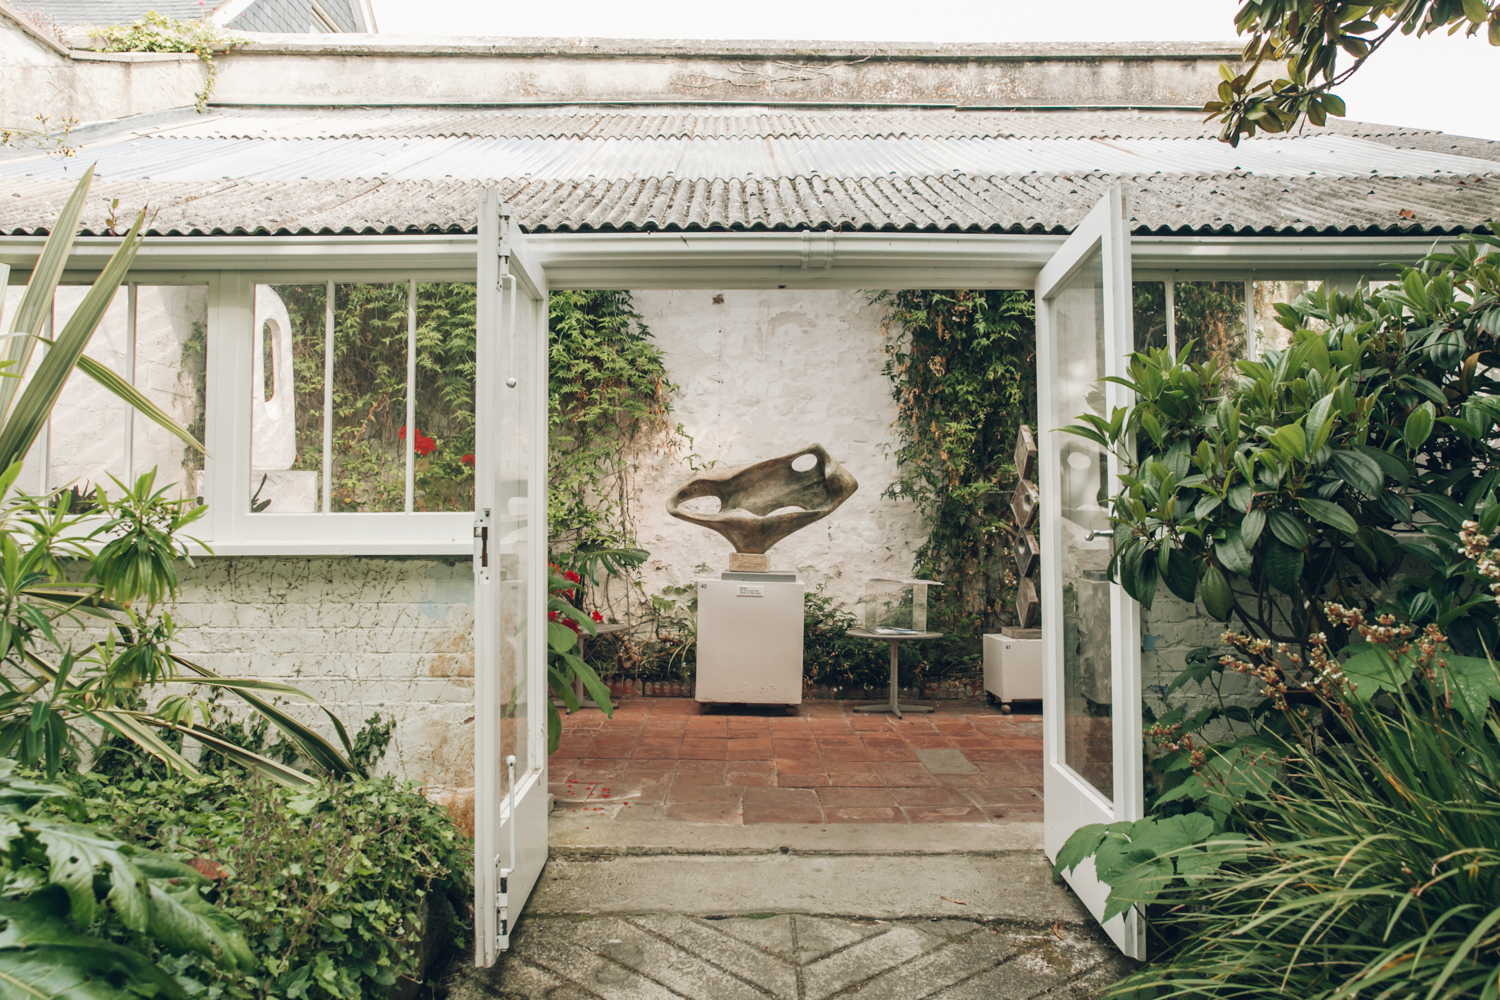 Barbara Hepworth's sculpture and garden